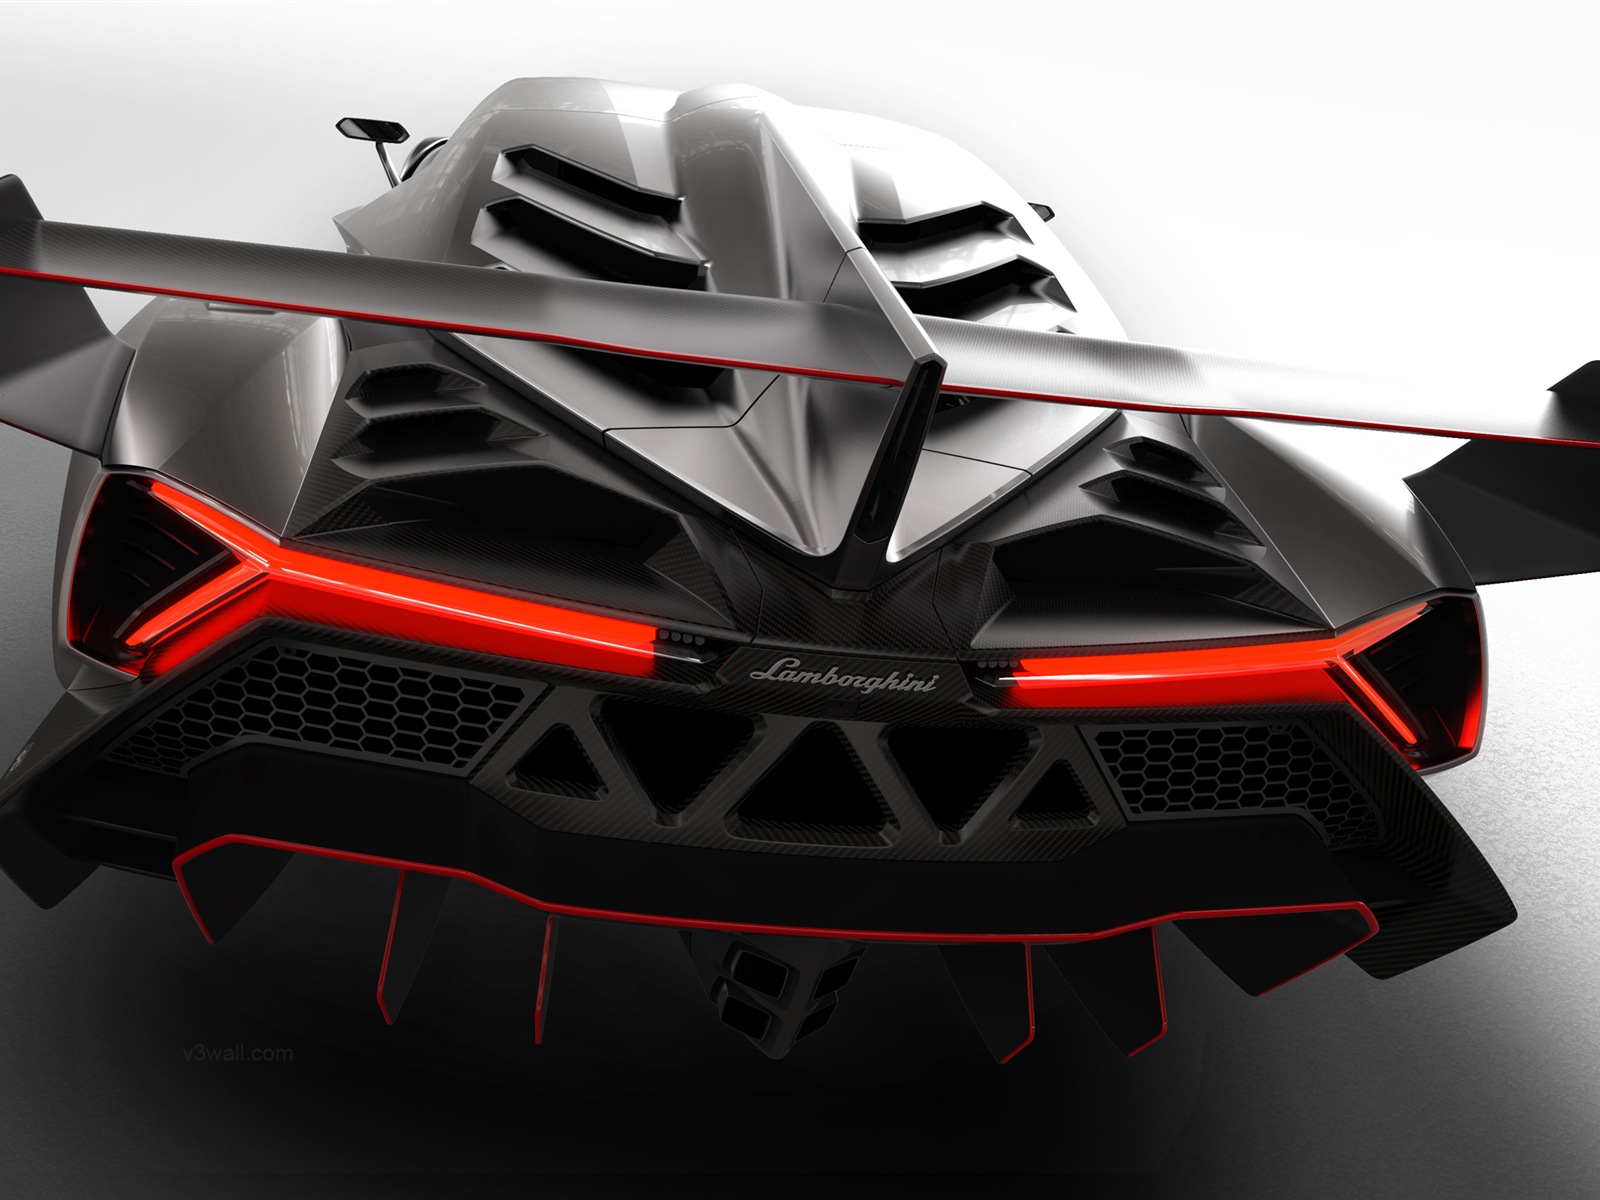 2013 Lamborghini Veneno 蘭博基尼Veneno豪華超級跑車高清壁紙 #5 - 1600x1200